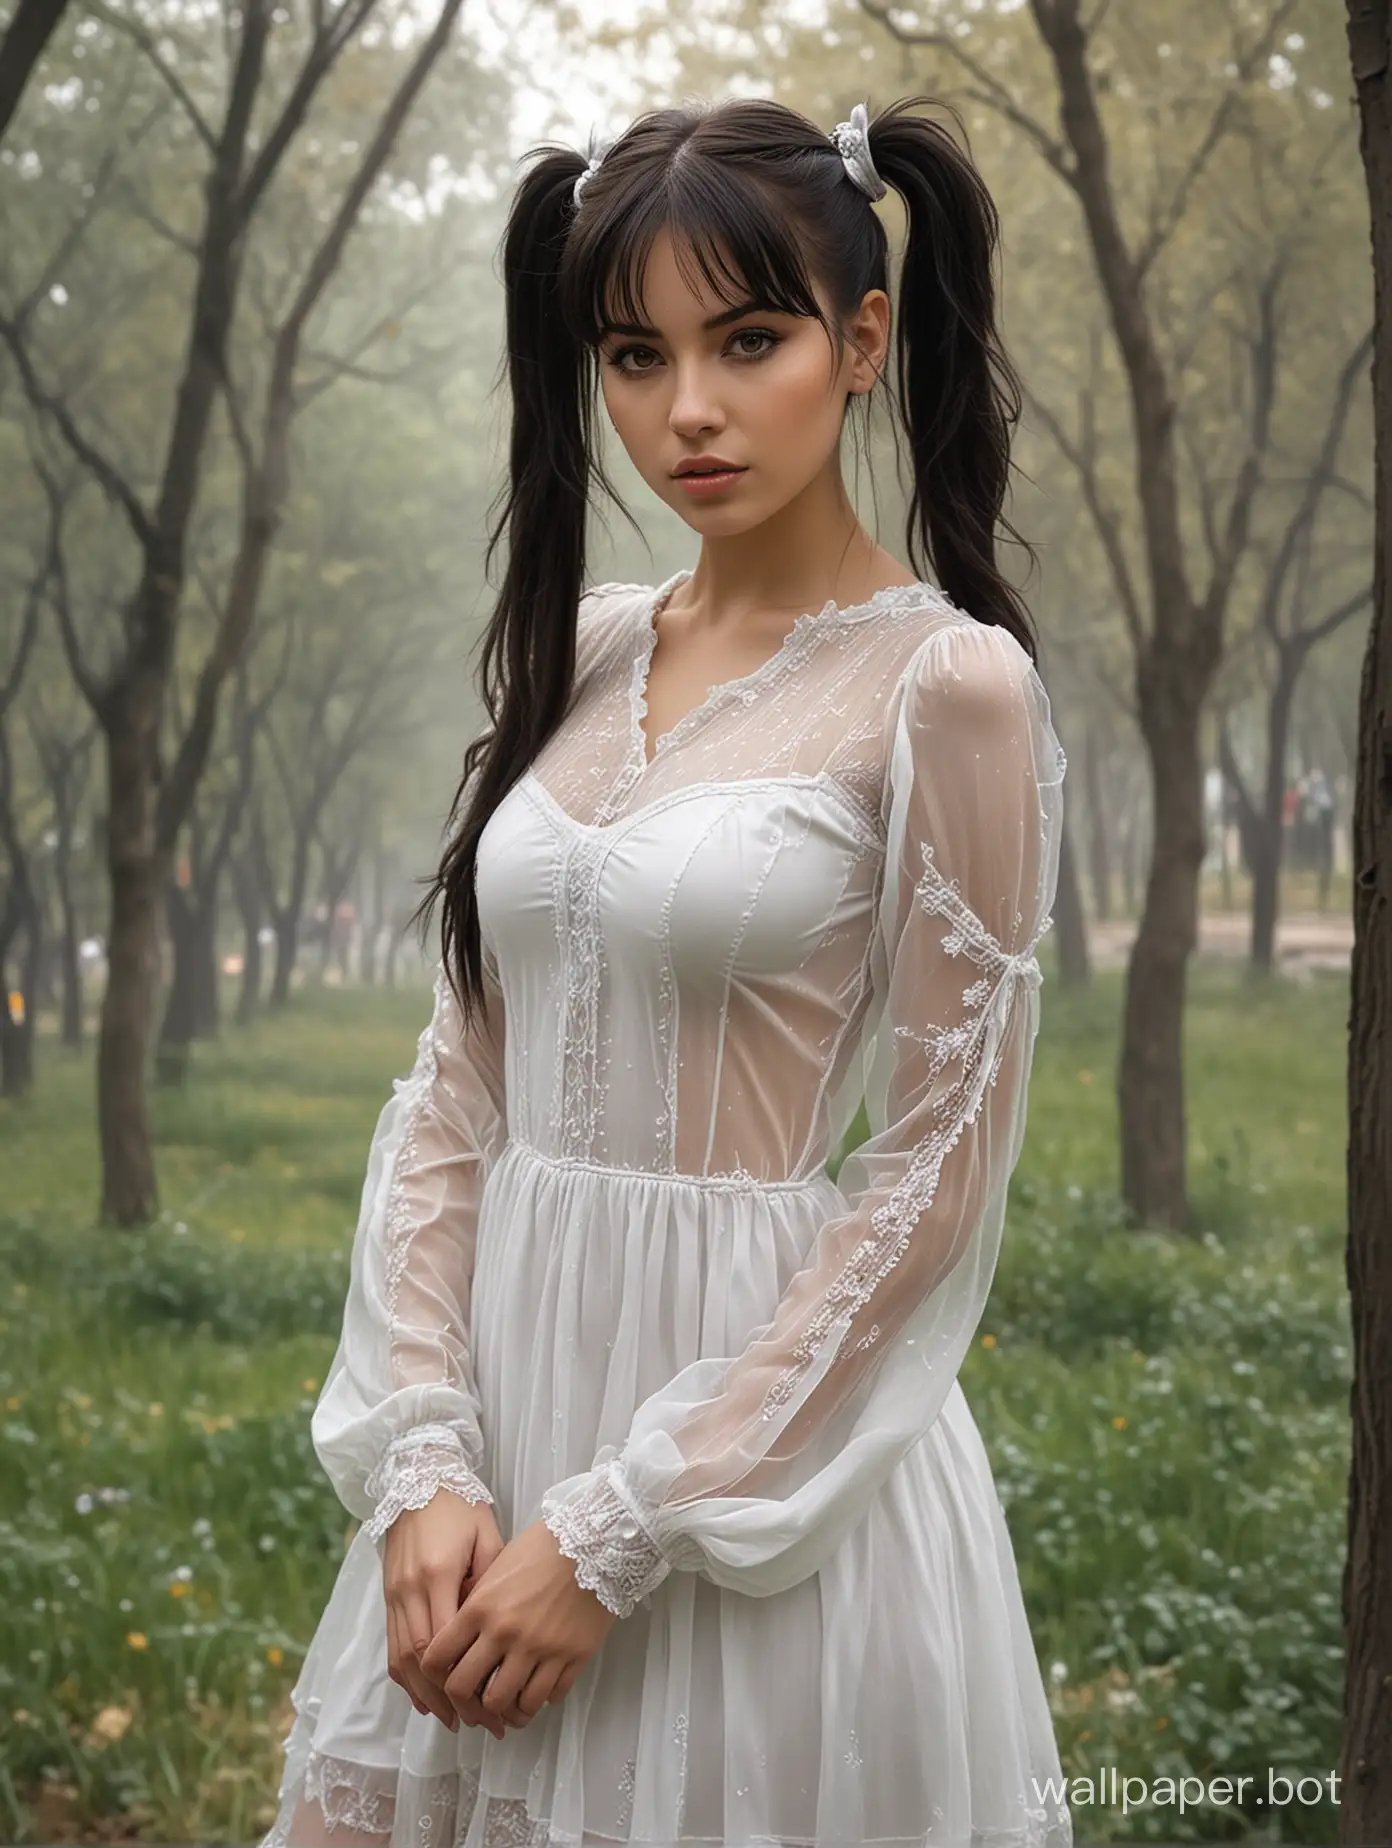 Оксана Почепа 25 лет темные волосы с хвостиками 6 размер груди узкая талия В белом прозрачном платье держит В парке высокая реалистичность Стиль Луис Ройо